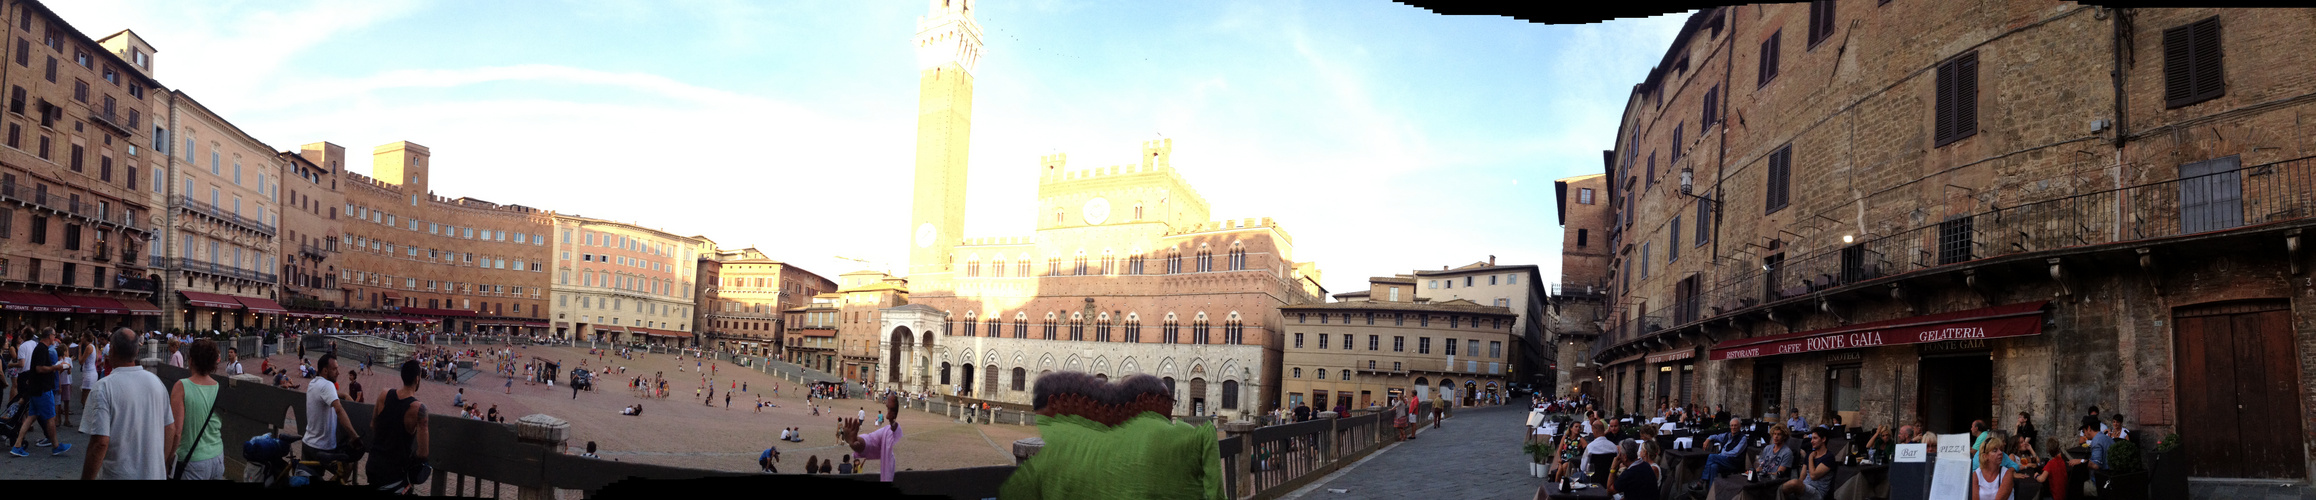 Panorama Siena